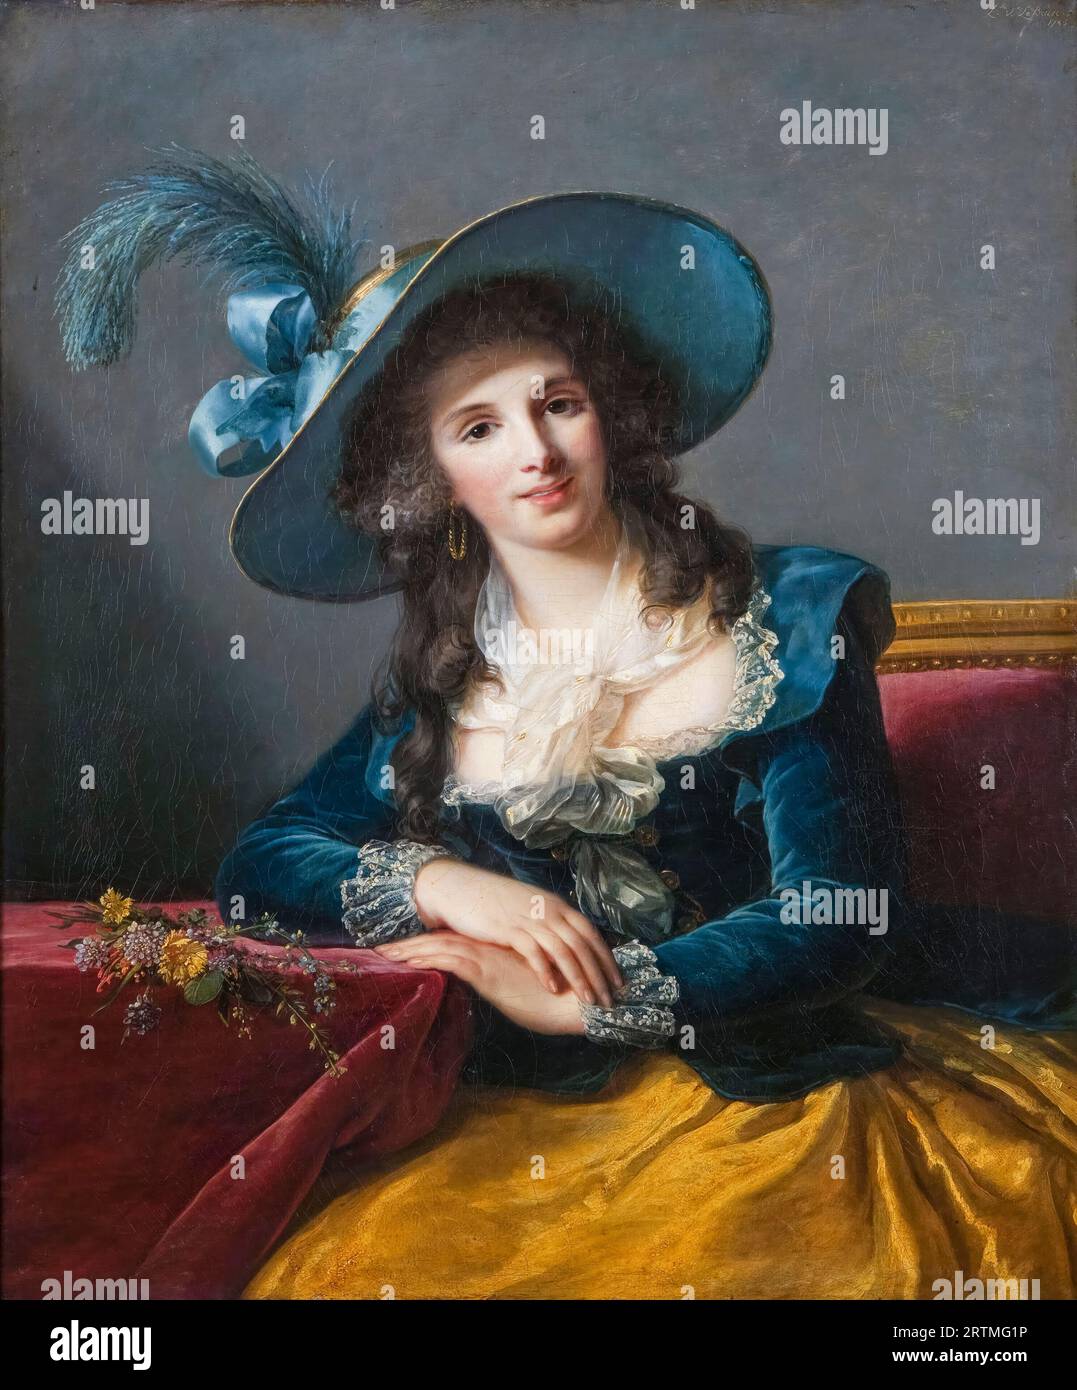 Antoinette-Elisabeth-Marie d'Aguesseau, Countess of Ségur, portrait painting in oil on canvas by Elisabeth Vigee Le Brun, 1785 Stock Photo